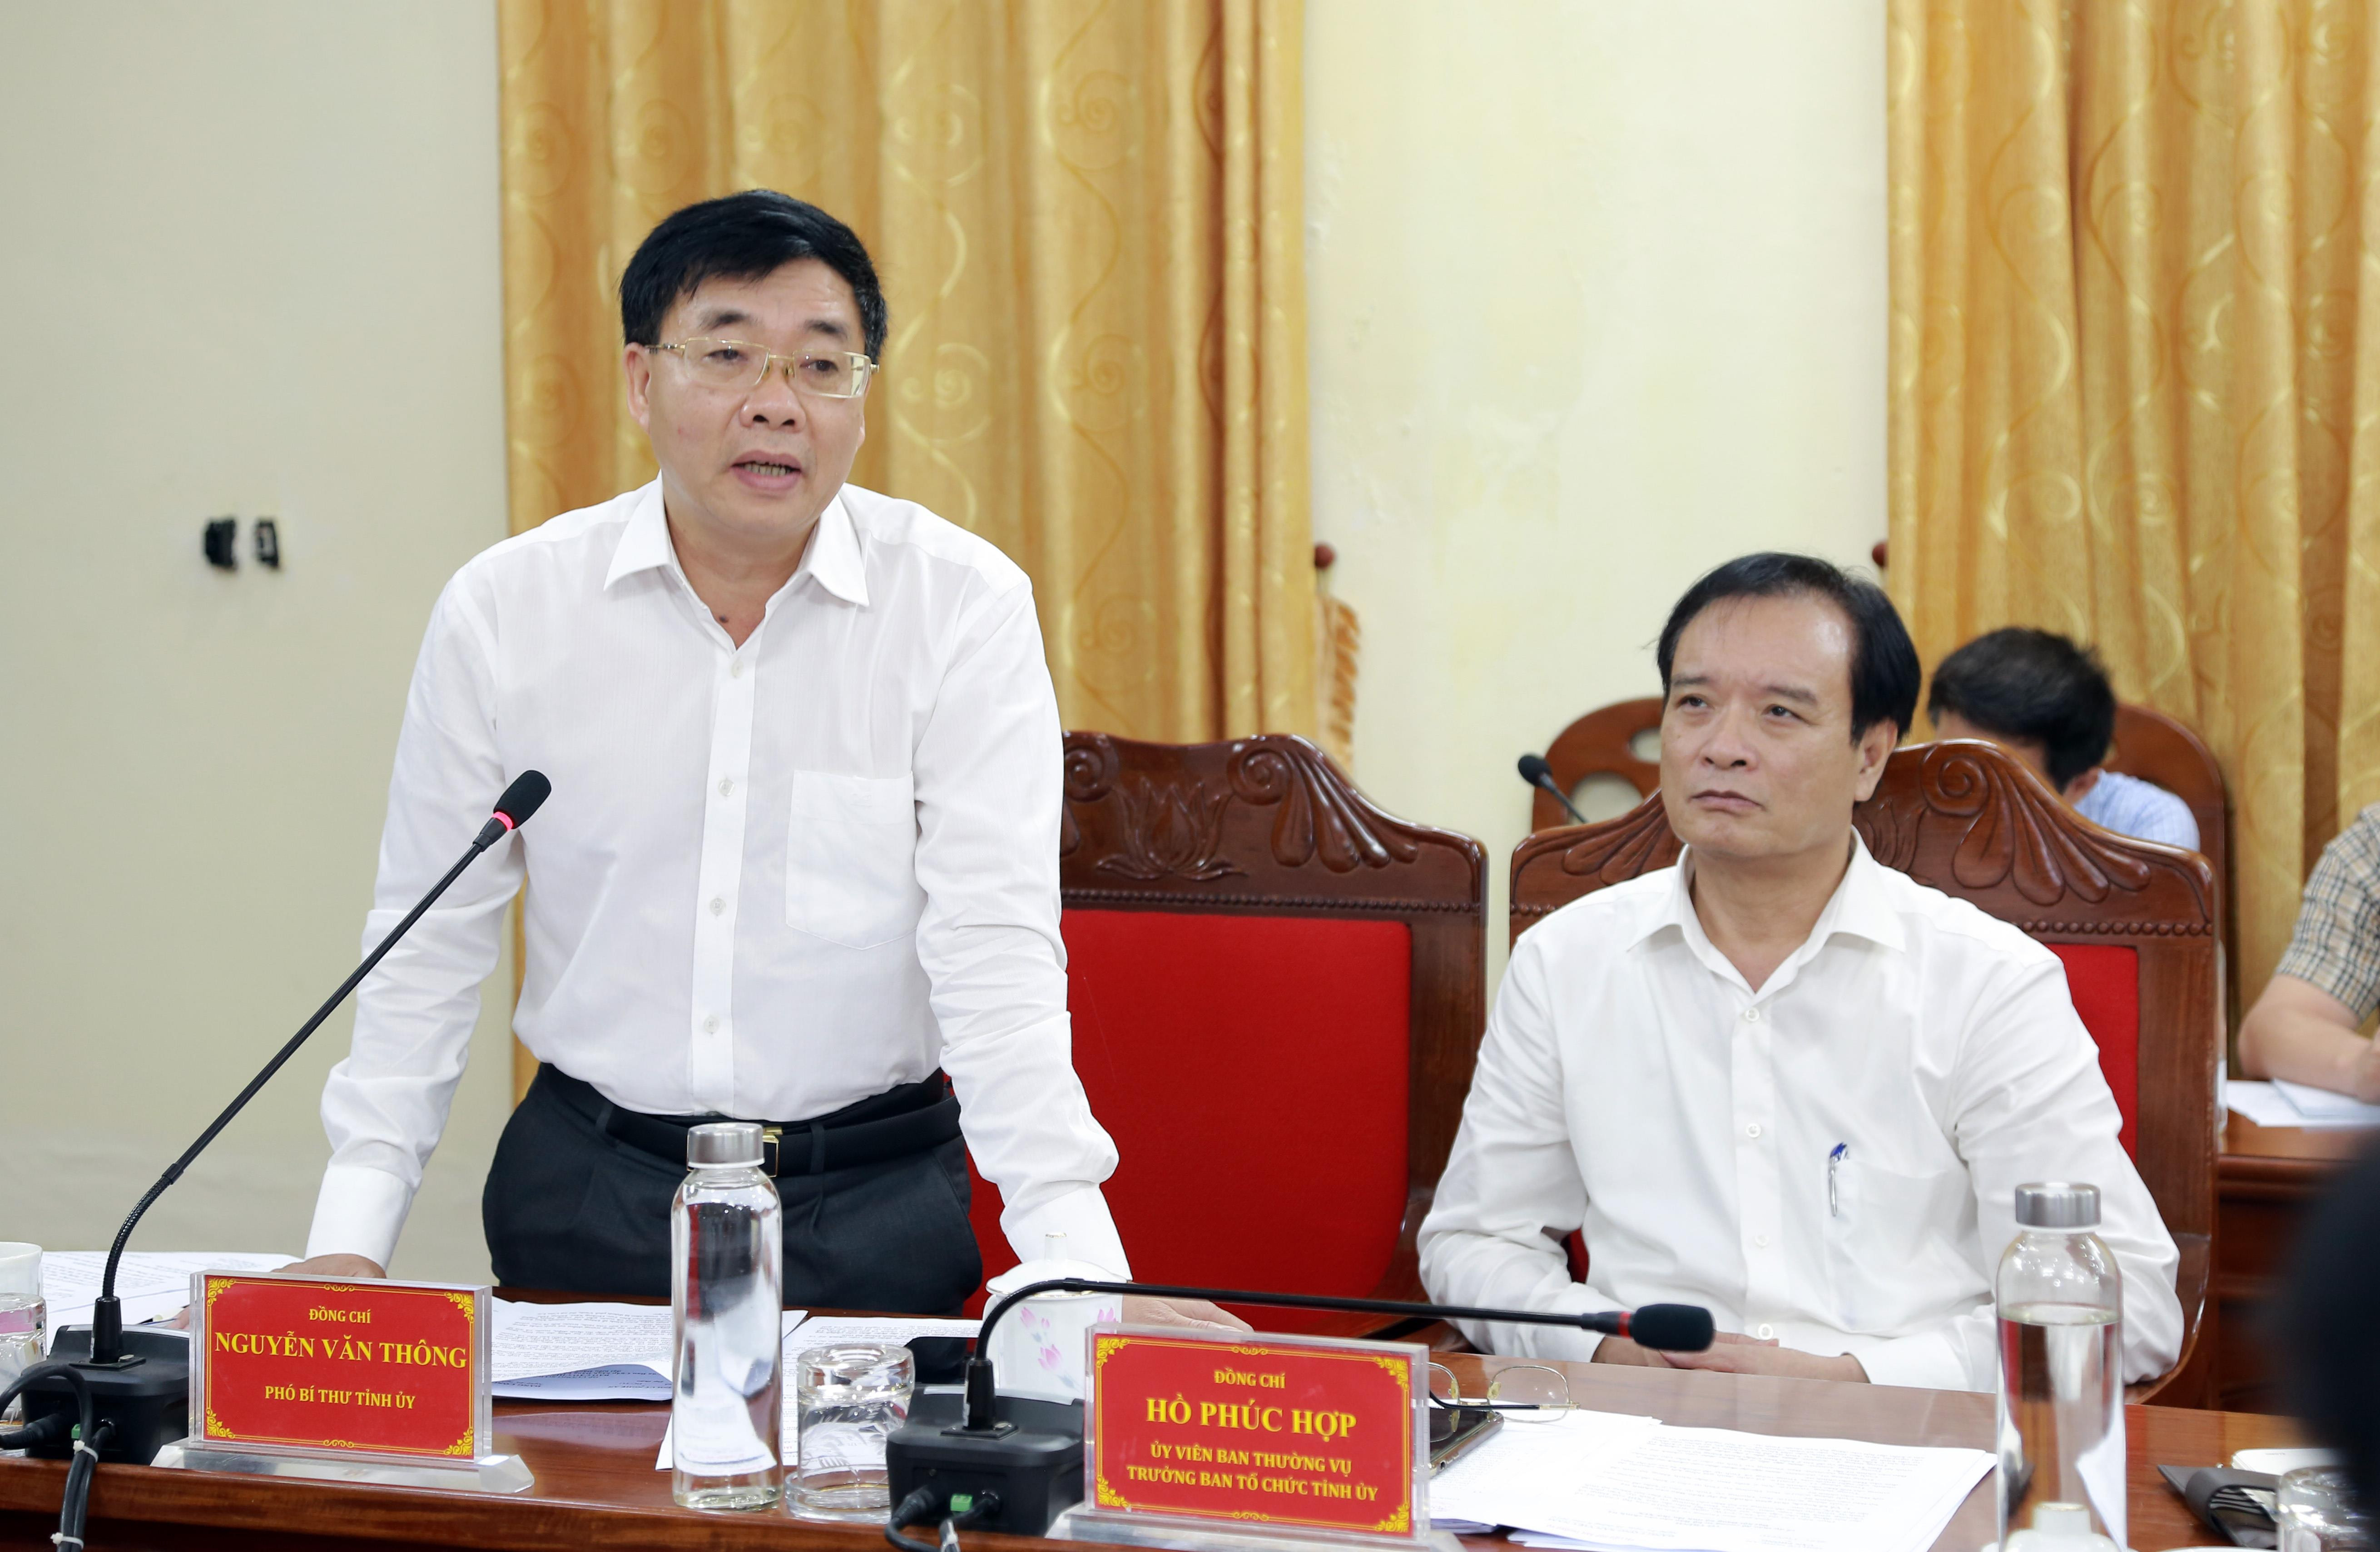 Đồng chí Nguyễn Văn Thông - Phó Bí thư Tỉnh ủy phát biểu tại phiên họp. Ảnh: Đào Tuấn 